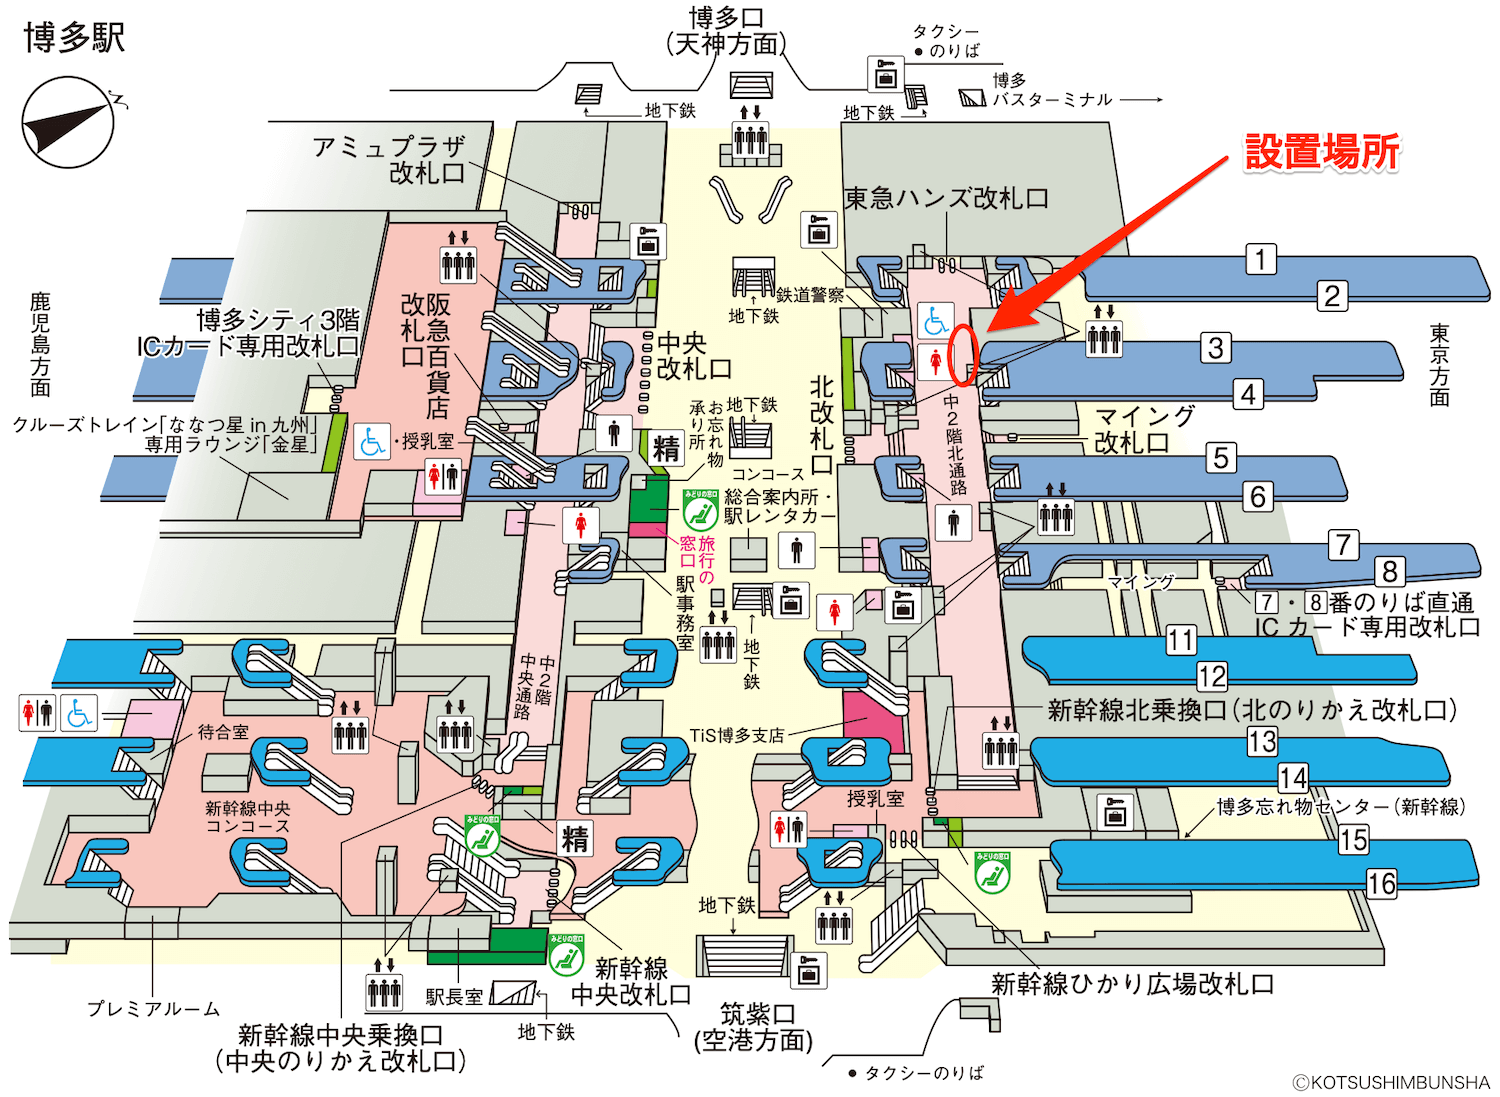 JR九州博多駅の構内図マップ